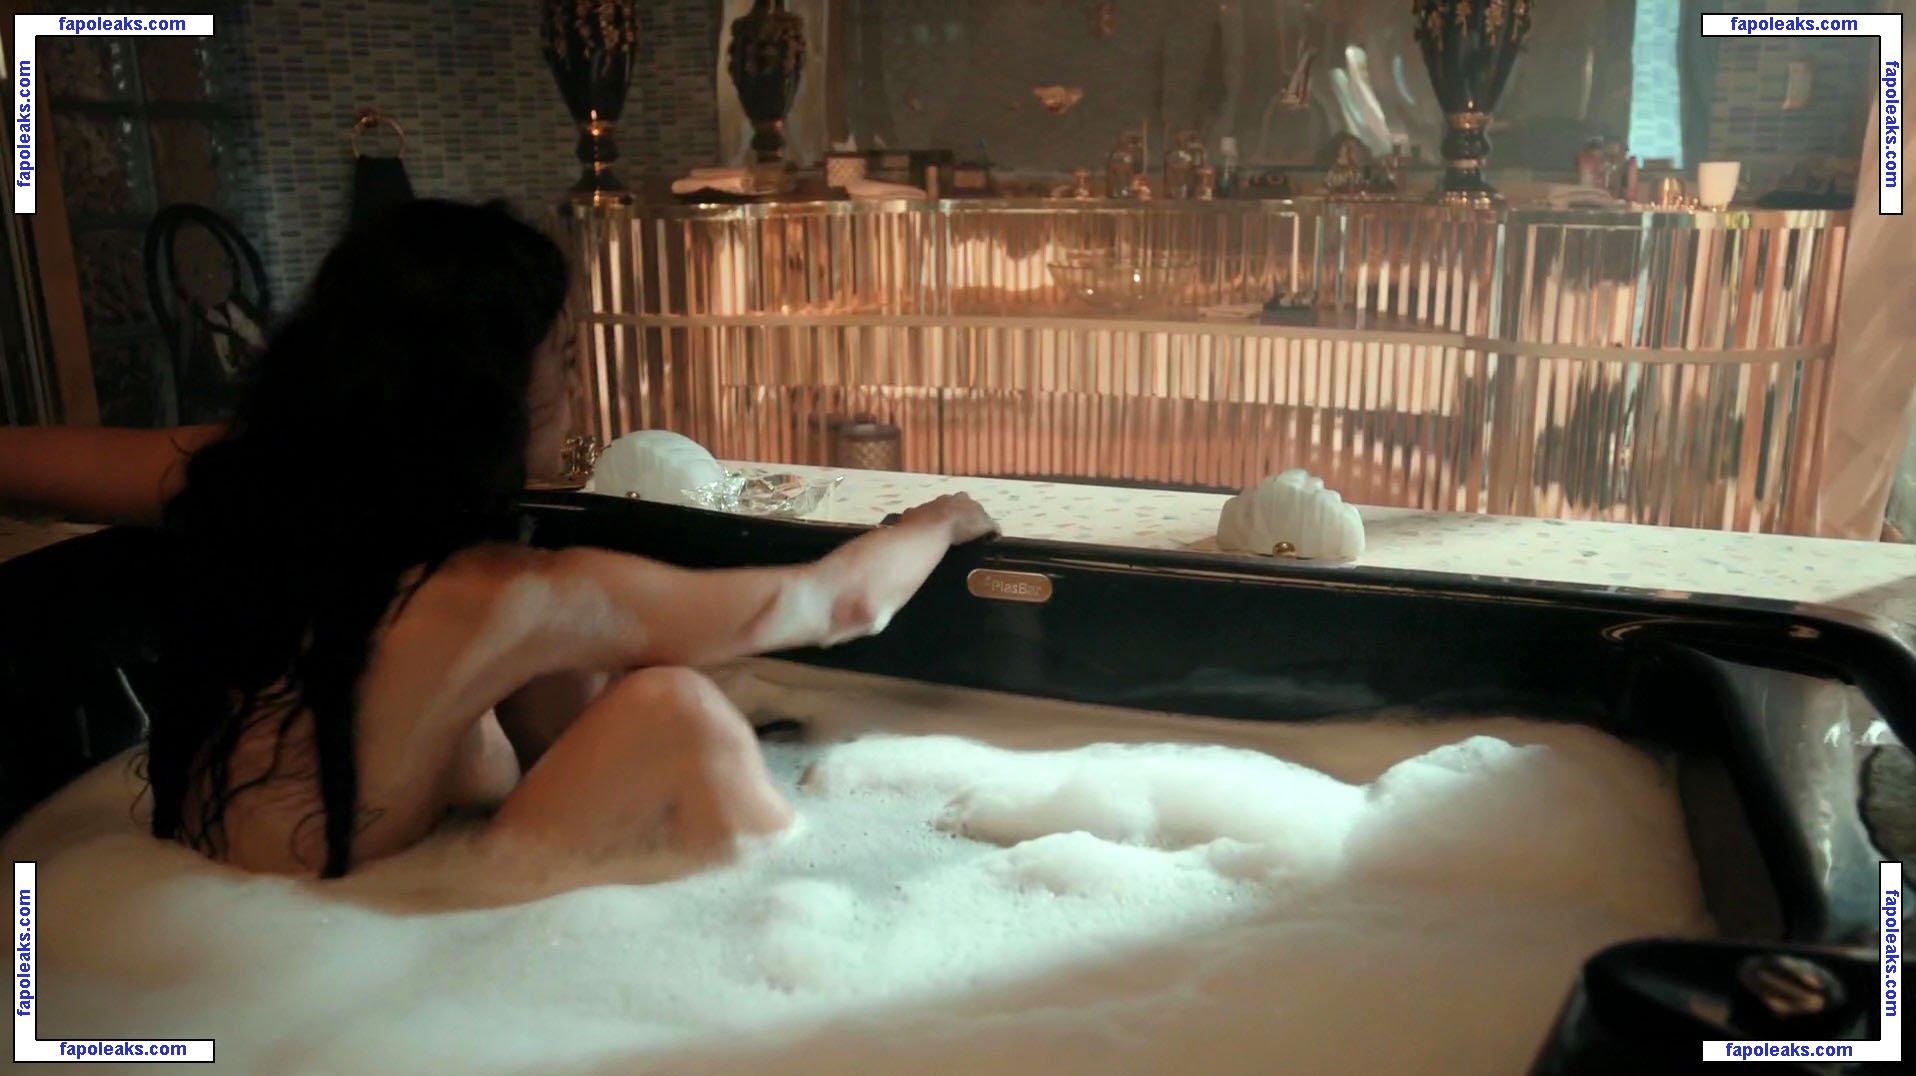 Alice Braga / alicebraga nude photo #0129 from OnlyFans